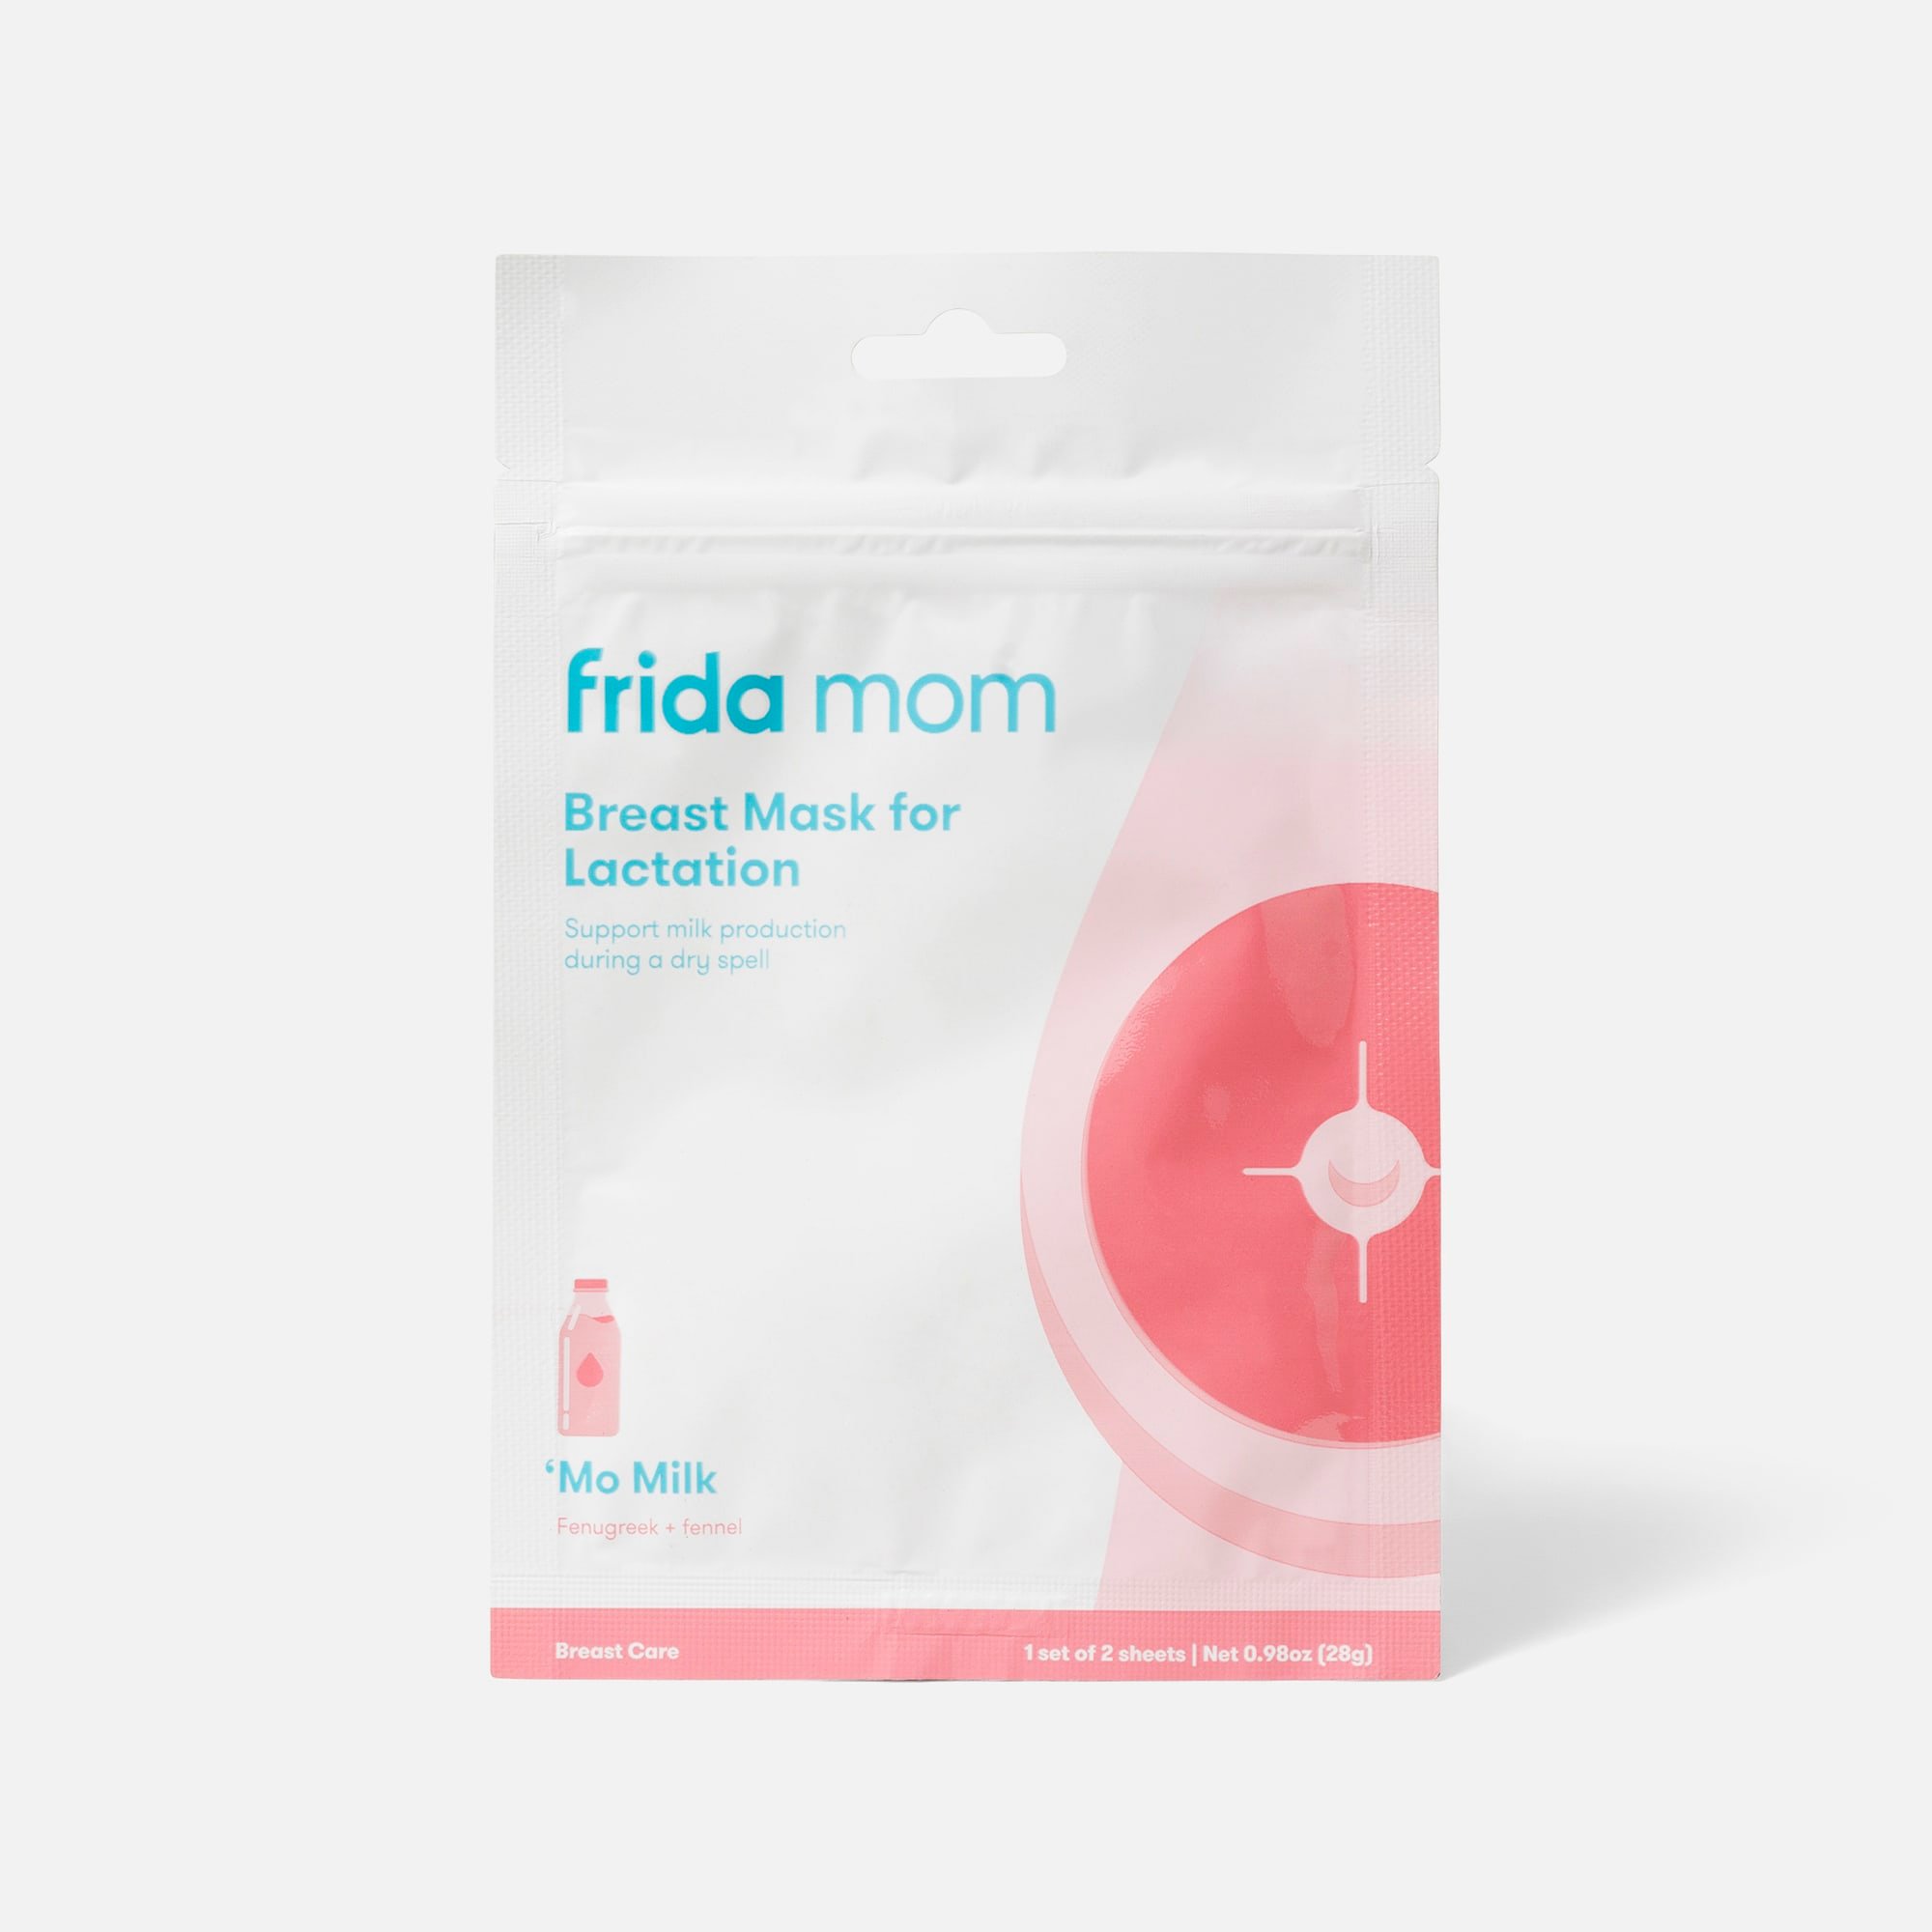 Frida Mom FSA and HSA Store in Health and Medicine 